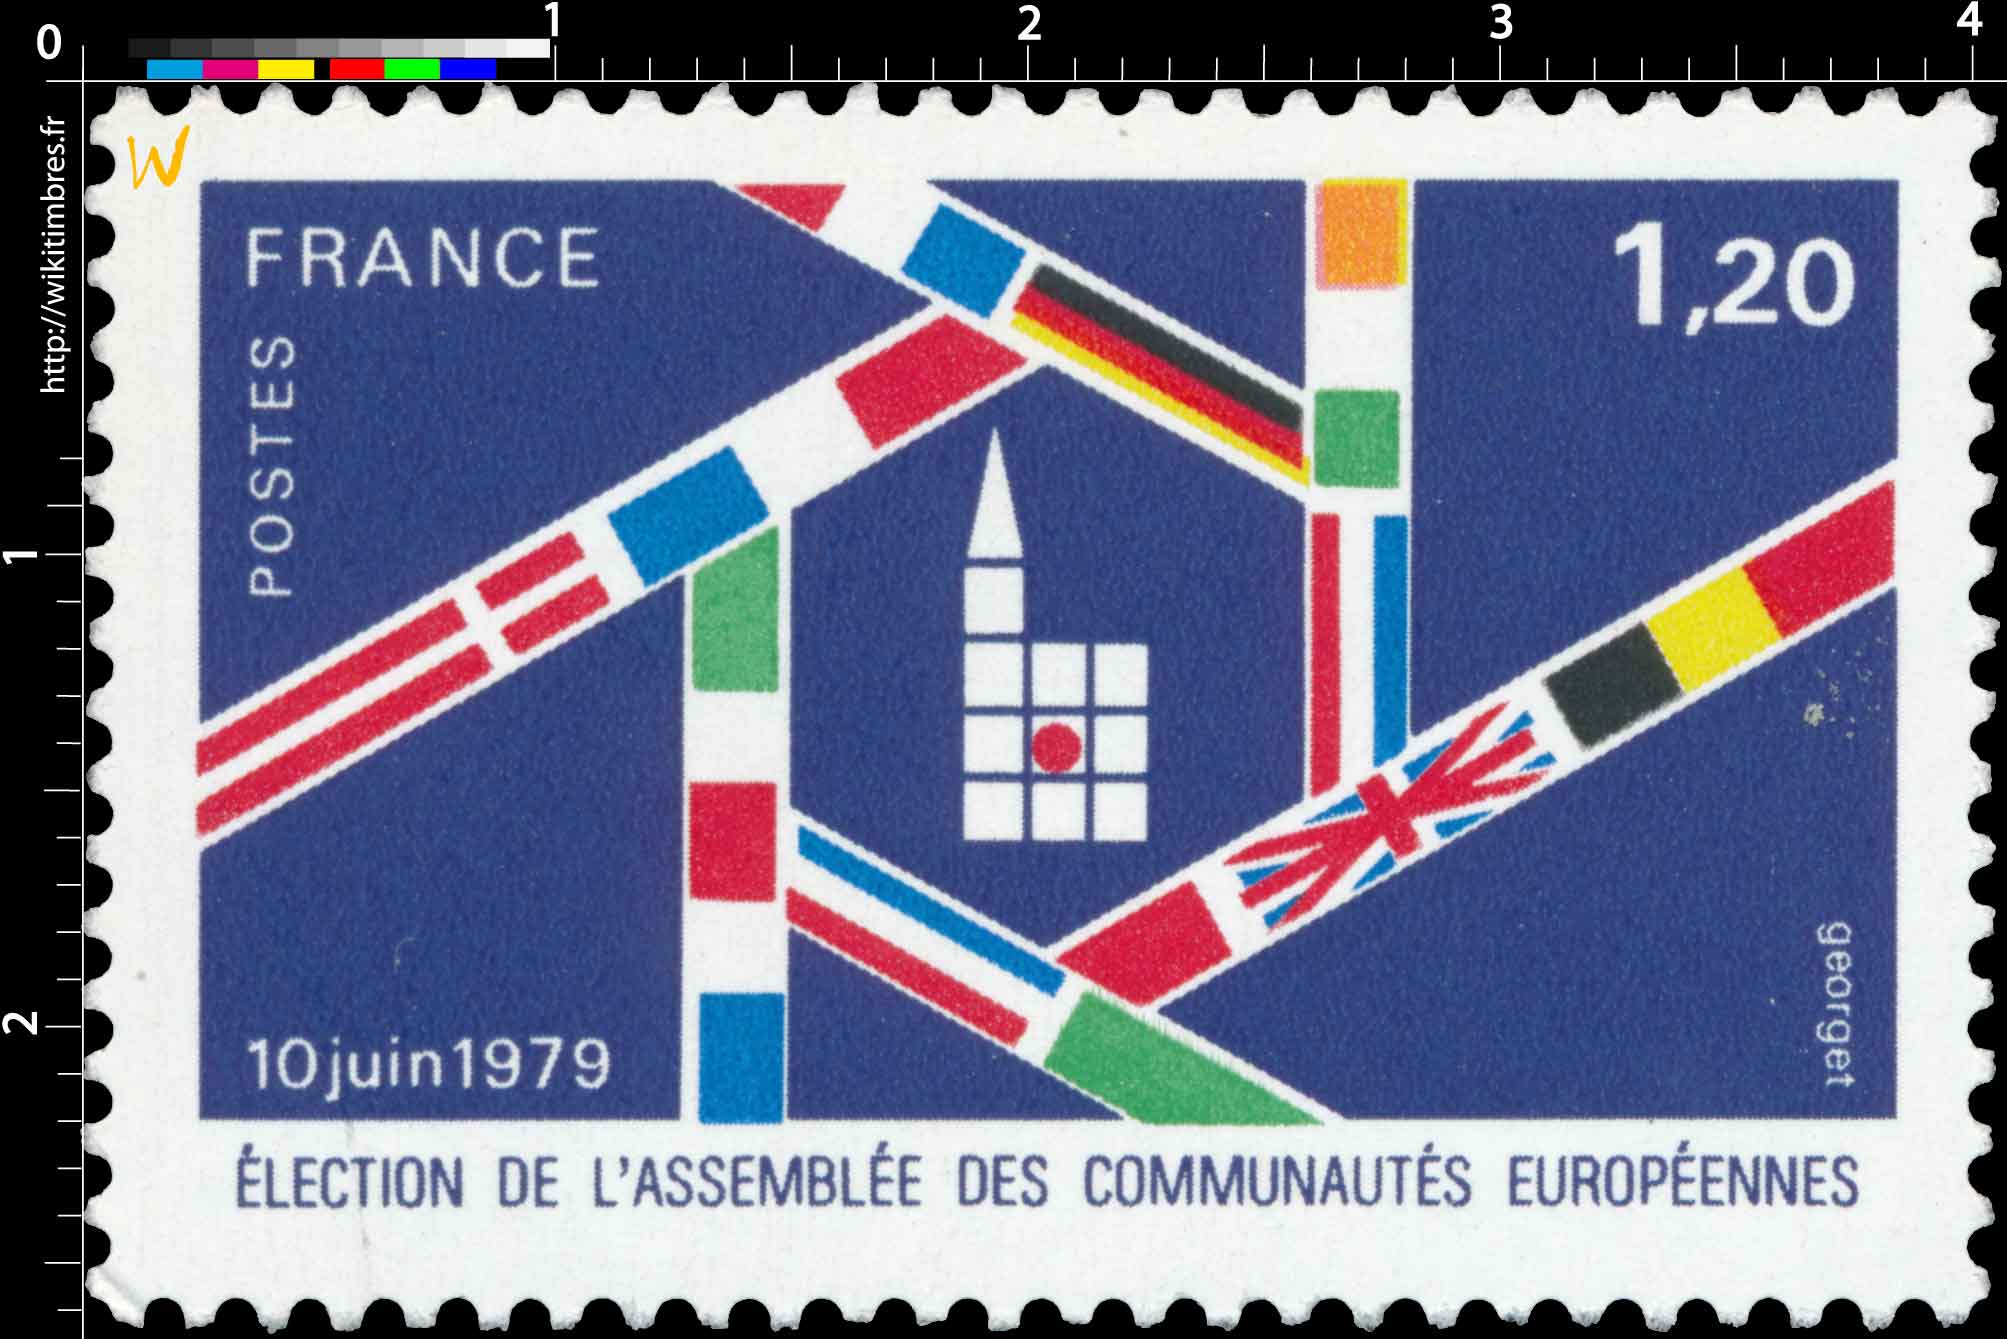 10 juin 1979 ÉLECTION DE L'ASSEMBLÉE DES COMMUNAUTÉS EUROPÉENNES